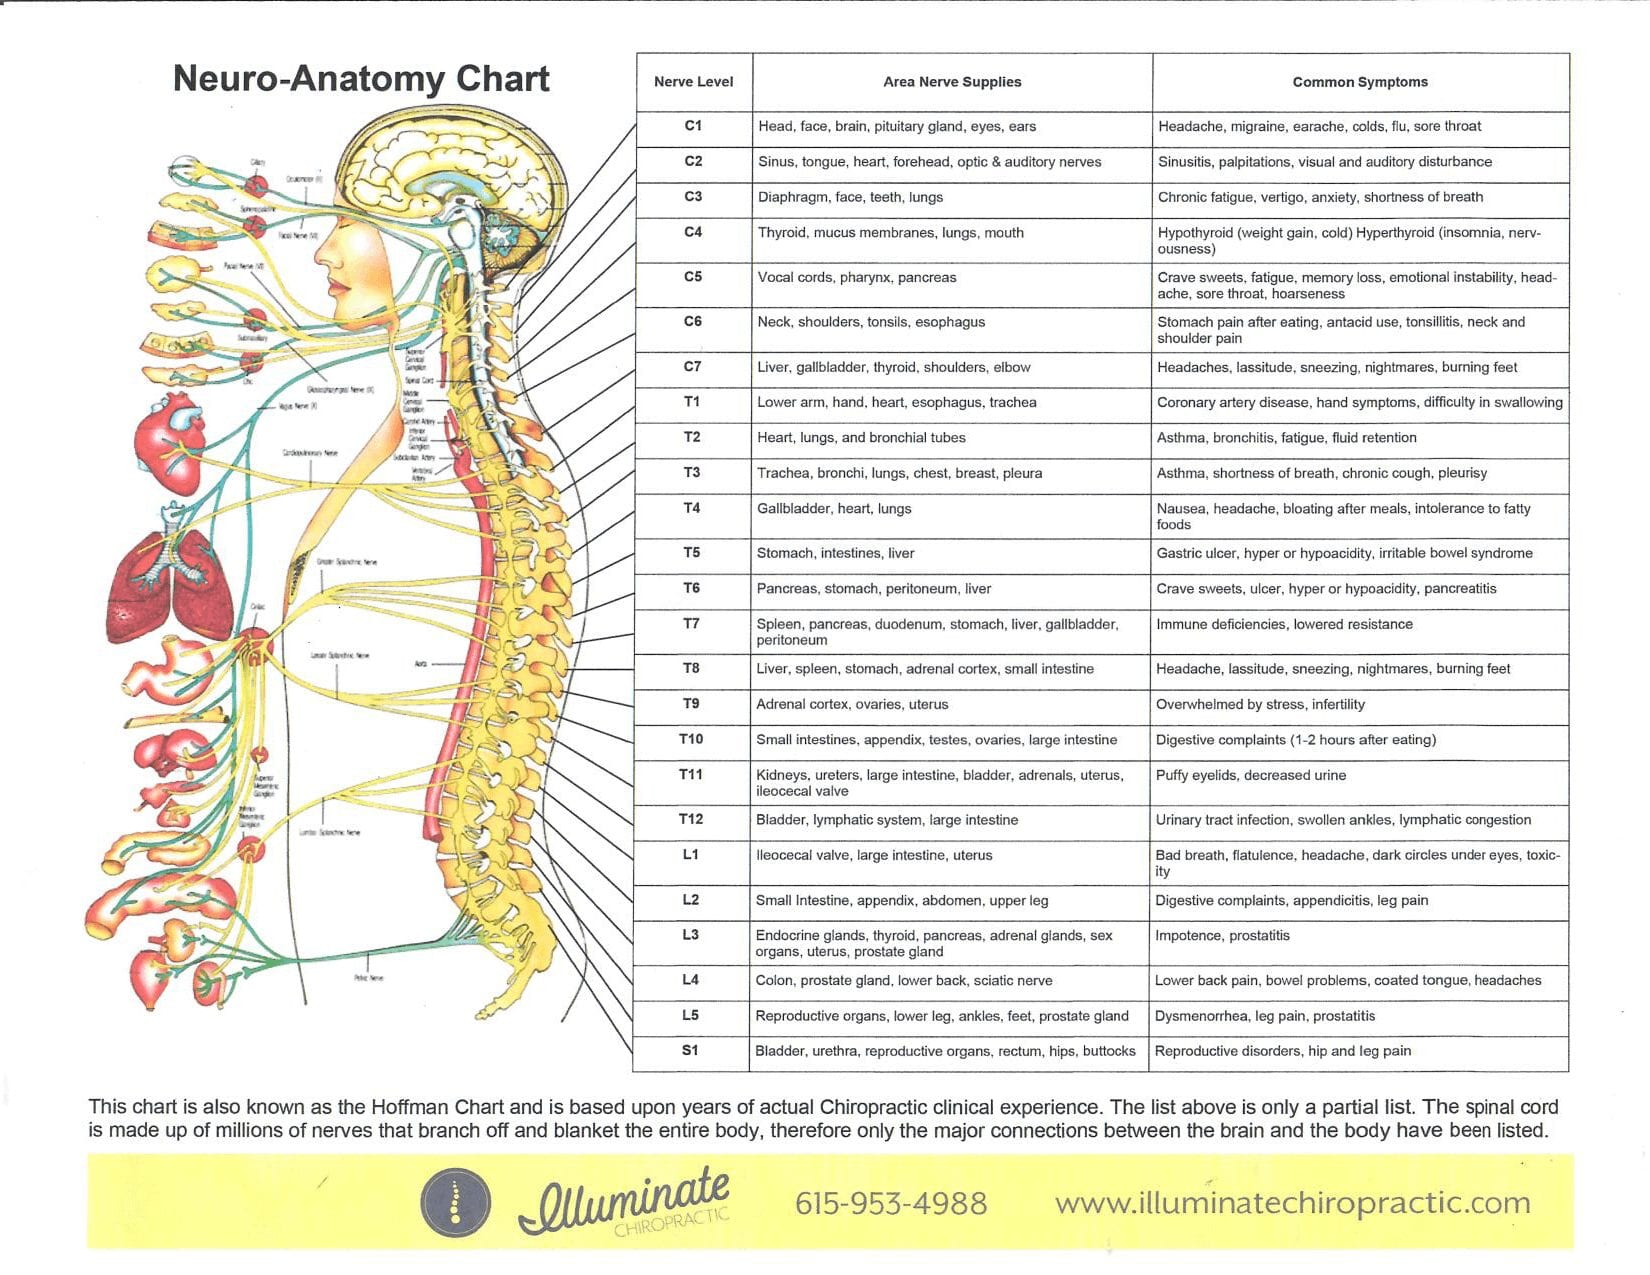 Illuminate Chiropractic neuro-anatomy chart